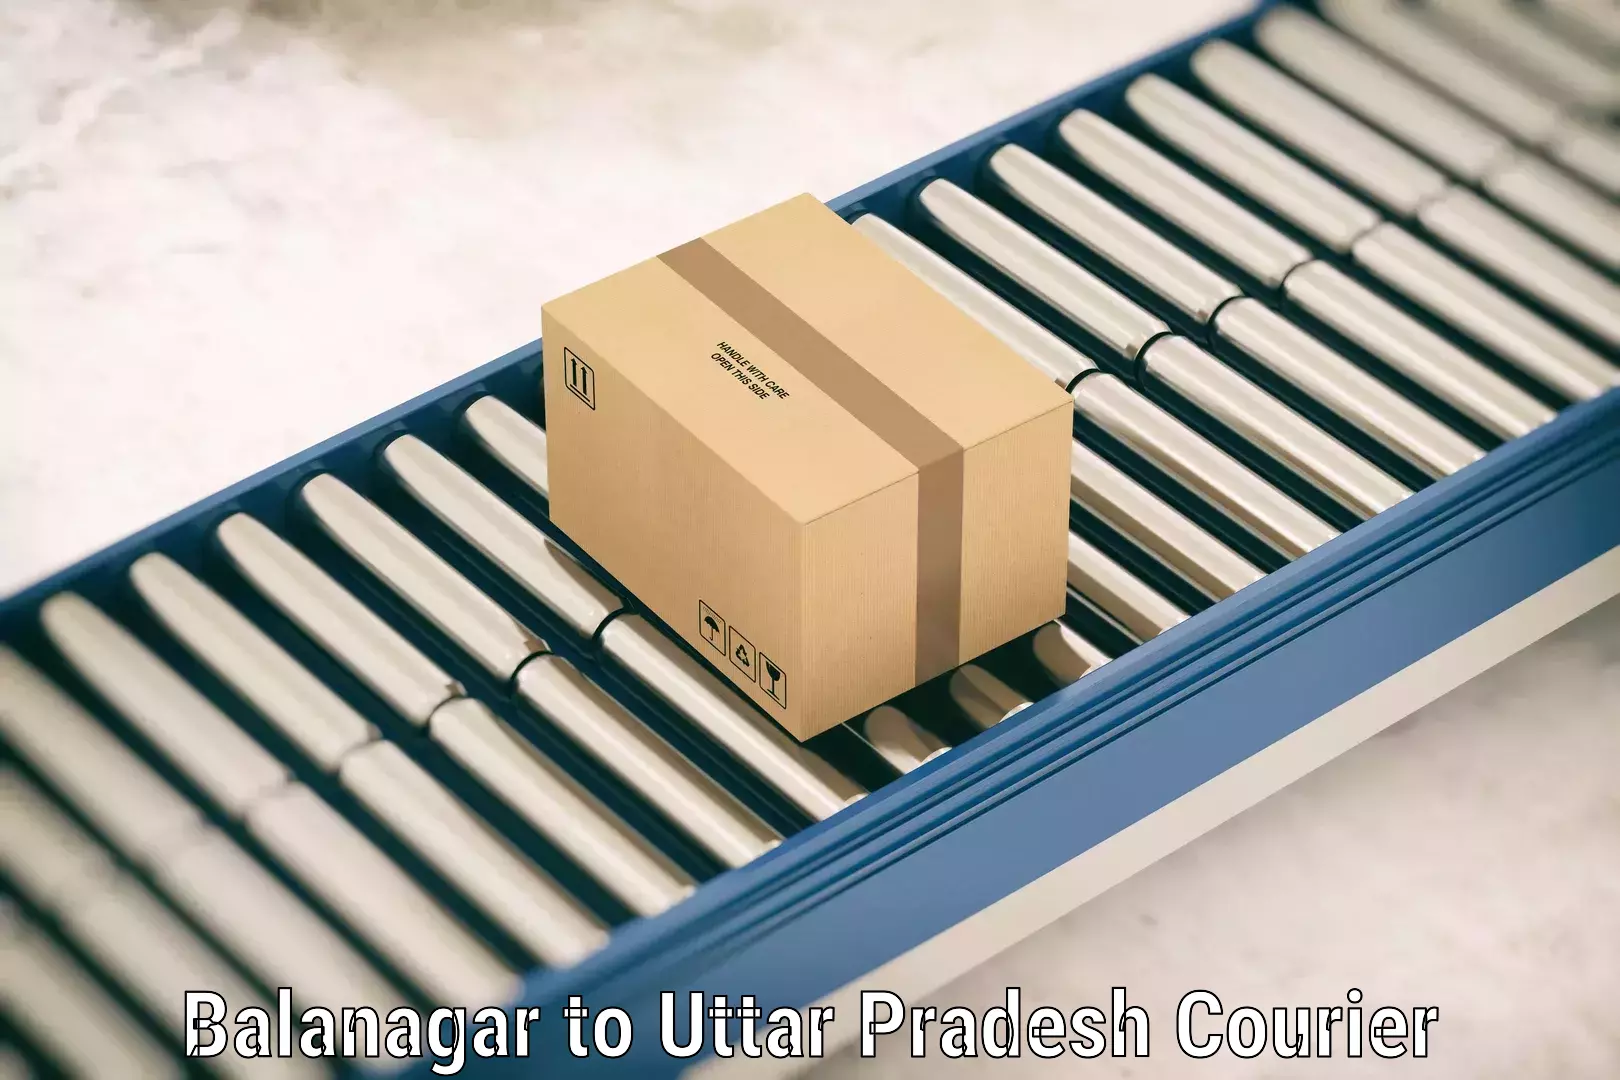 Luggage delivery estimate Balanagar to Agra